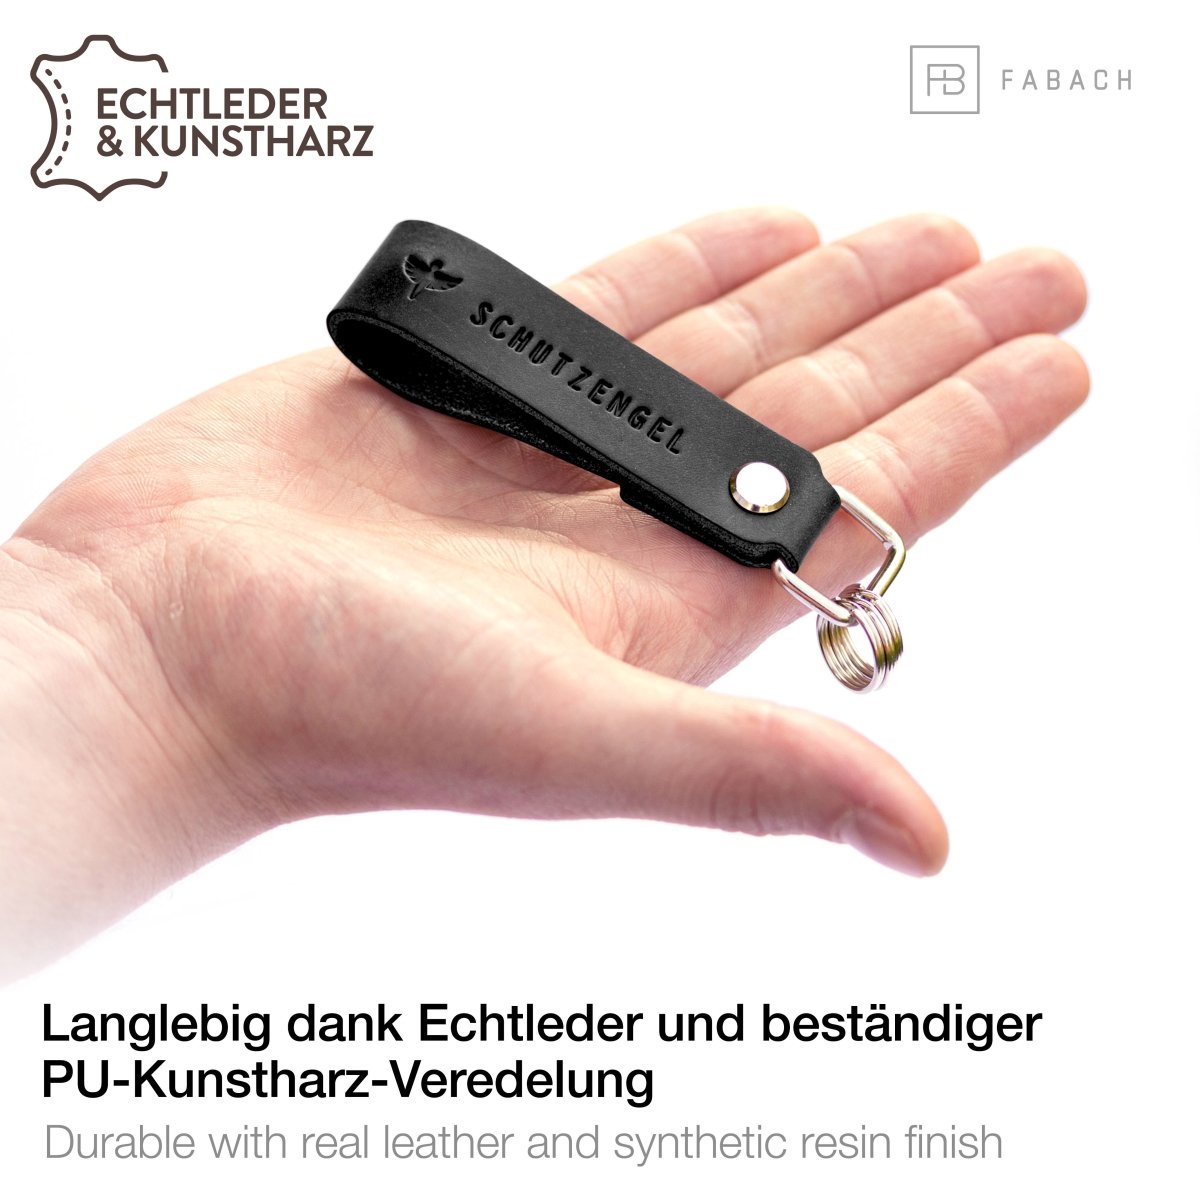 Schlüsselanhänger Schutzengel Gute Fahrt! mit Kunstlederband -  4010070658670